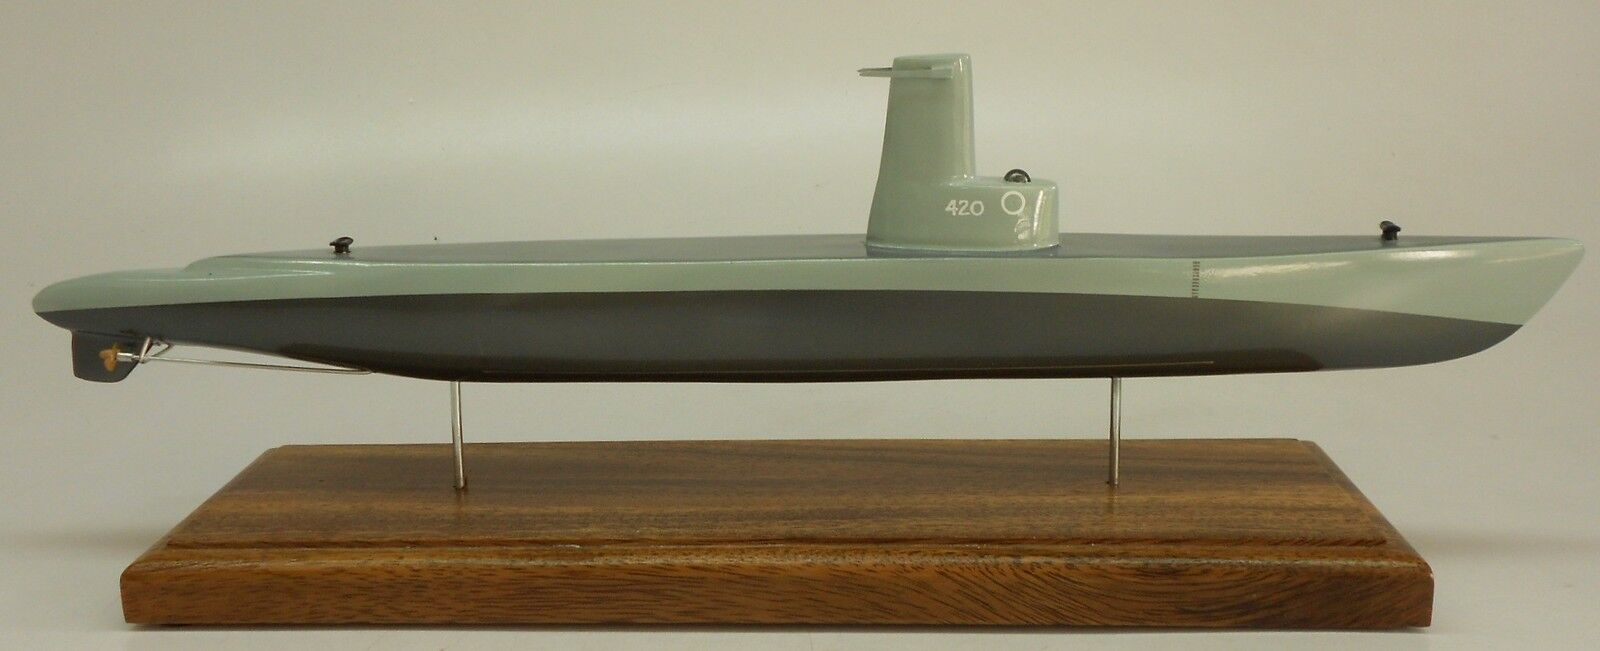 SS-420 USS Tirante Submarine Mahogany Kiln Dry Wood Model Small New